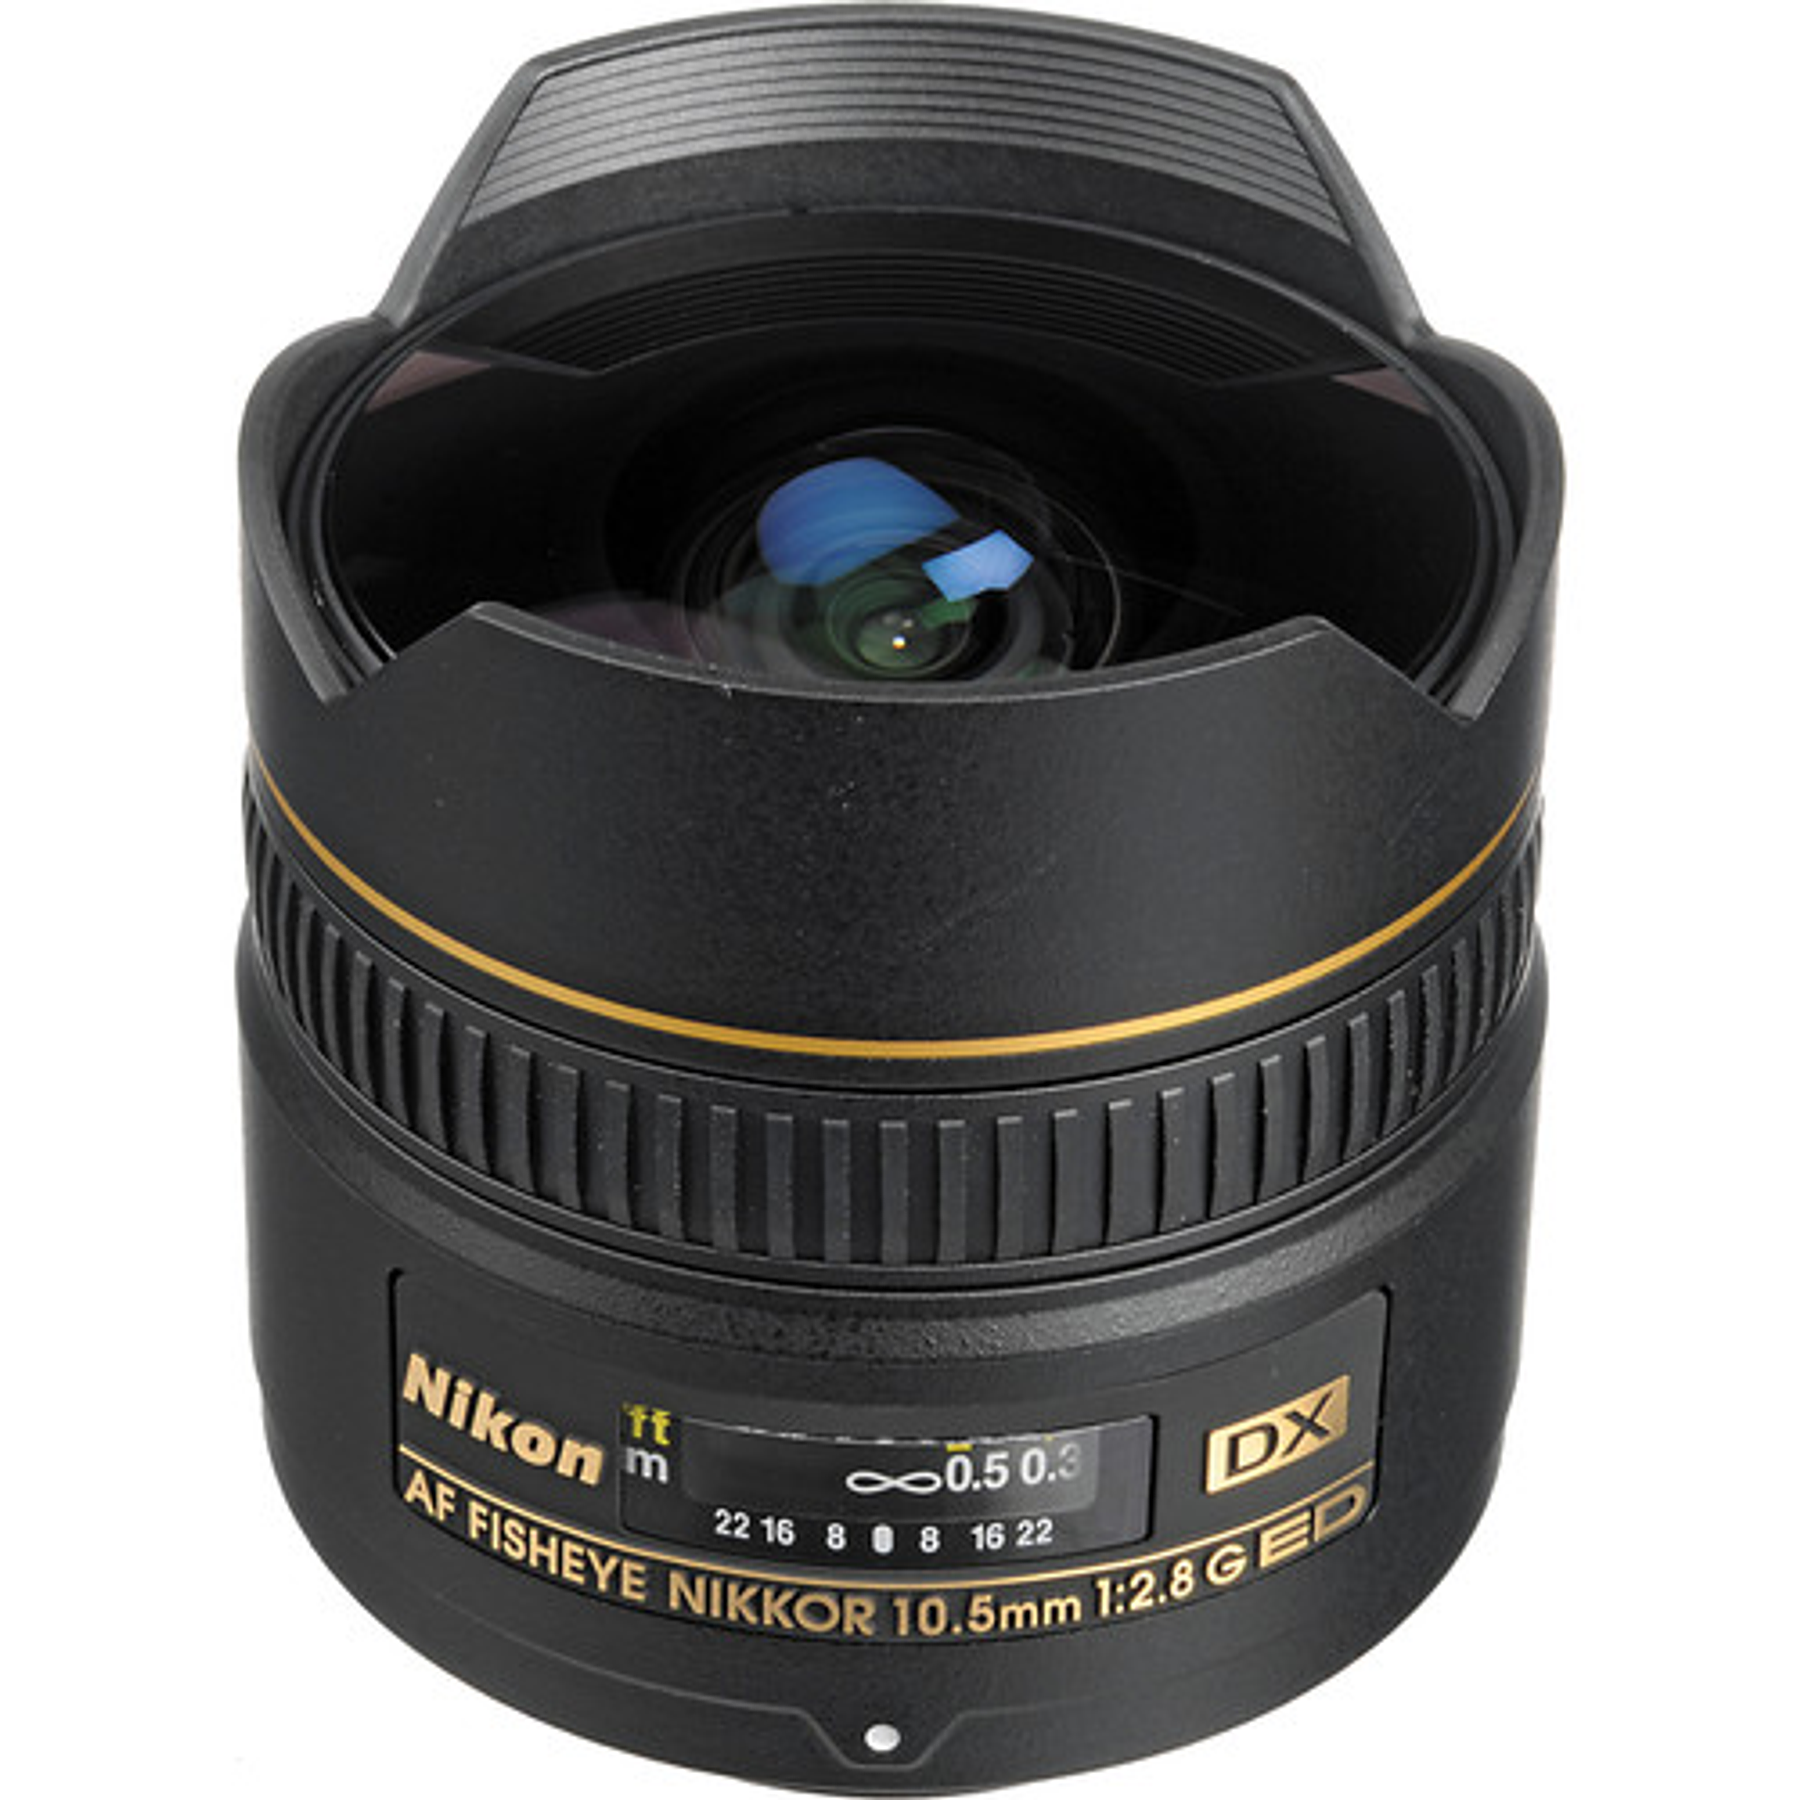 Nikon AF DX Fisheye-Nikkor 10.5mm f 2.8G - レンズ(単焦点)